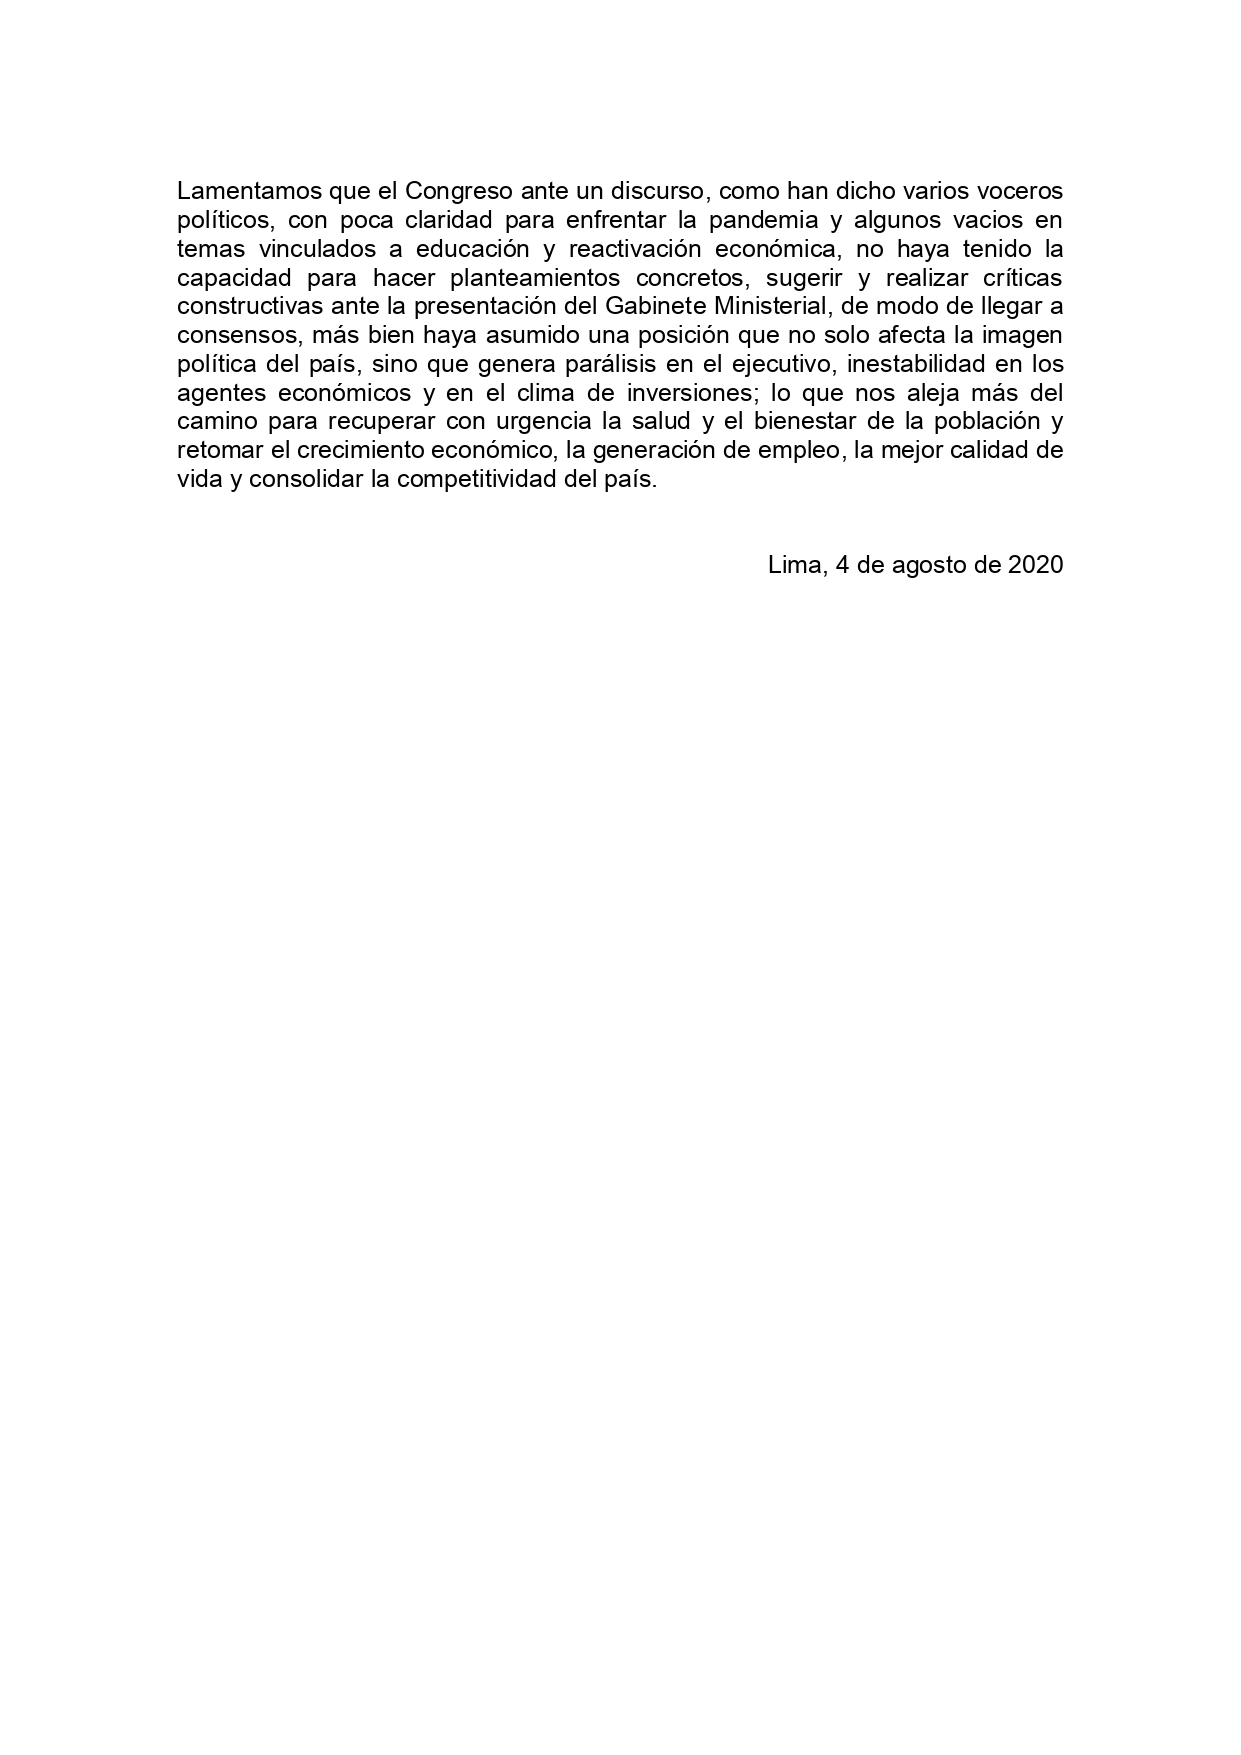 04.08.20 Pronunciamiento sobre enfrentamiento entre Ejecutivo y Legislativo page 0002